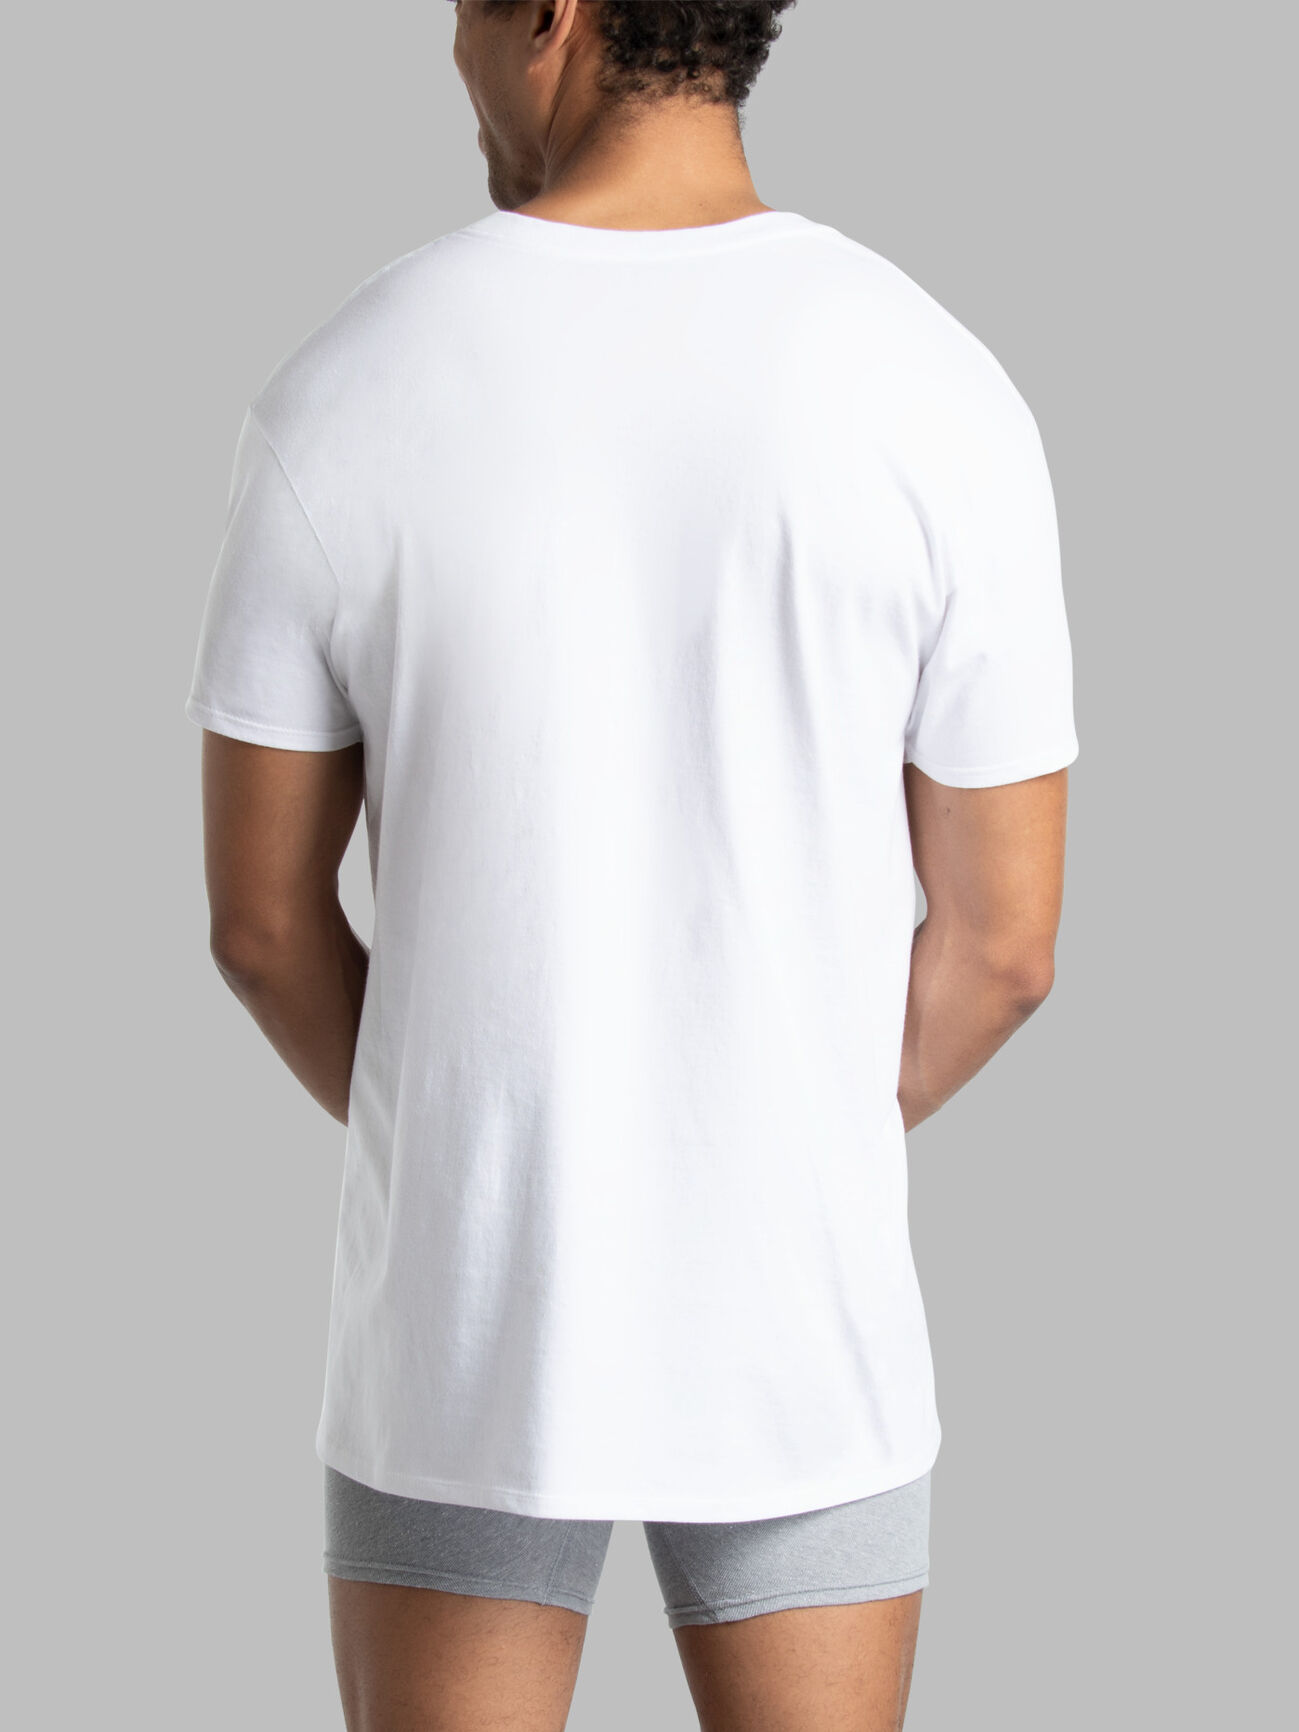 Men's Short Sleeve V-neck T-Shirts, White 6 Pack, Extended Sizes